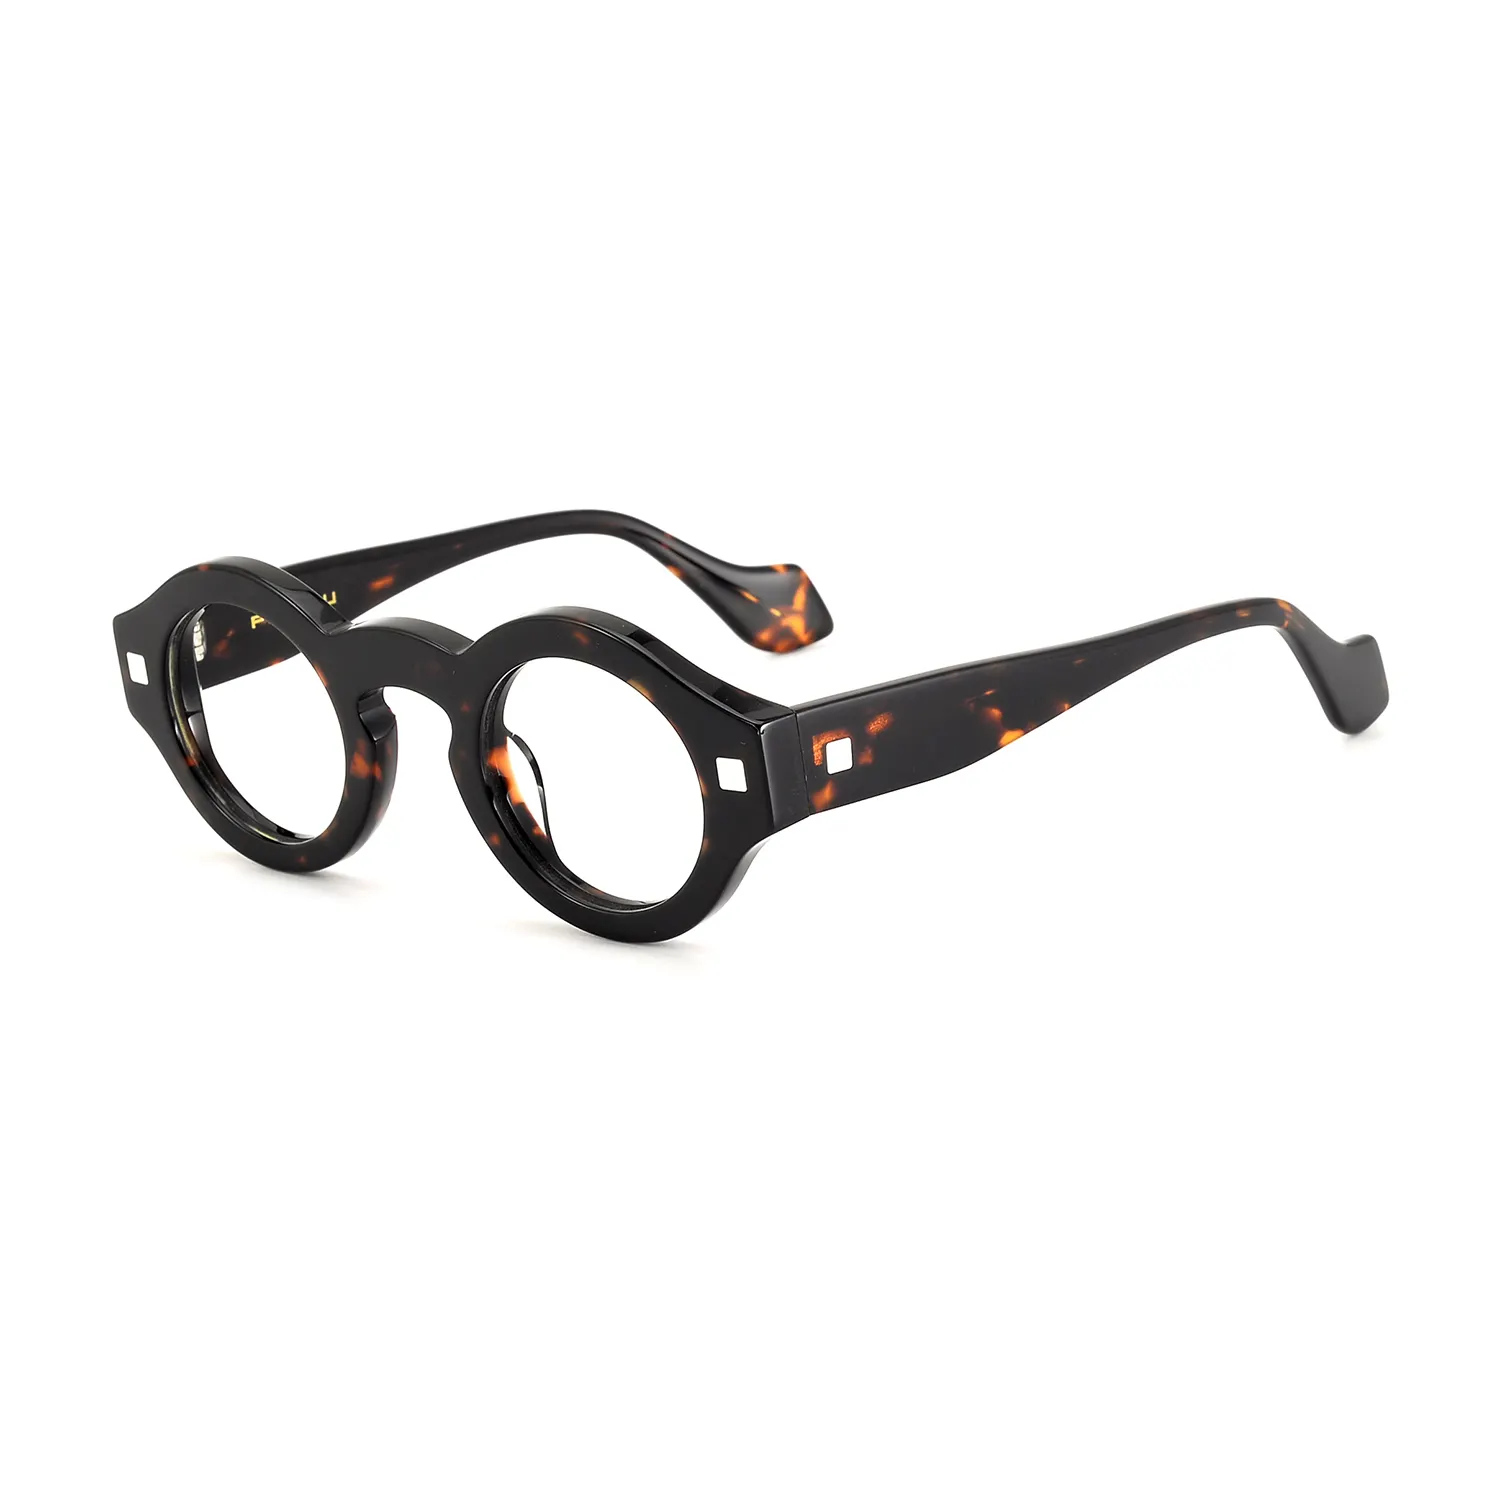 Lüks marka en kaliteli adam erkek okuma gözlüğü gözlük gözlük çerçeveleri özel Logo